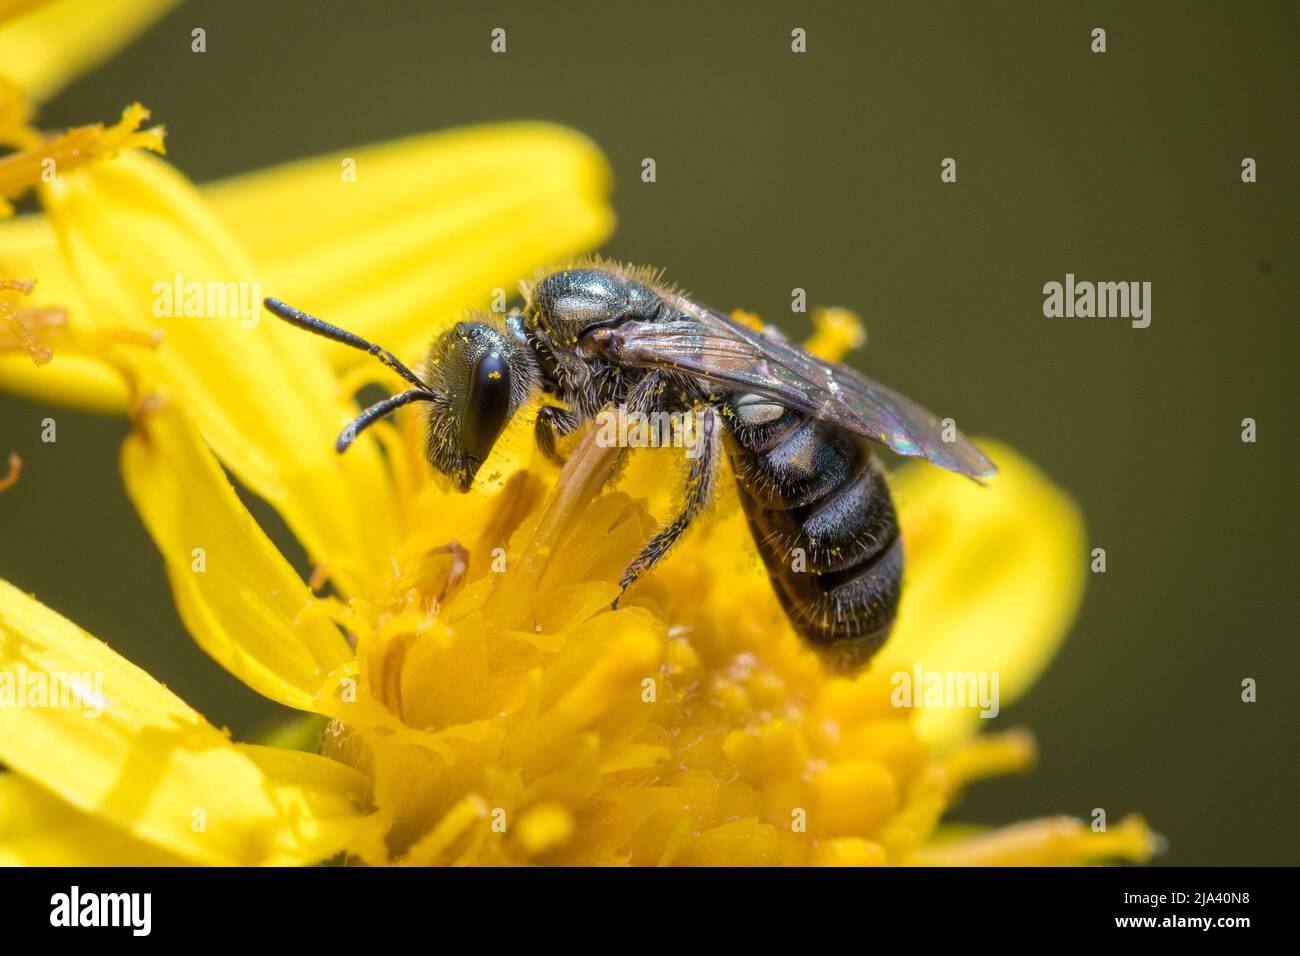 Primo piano di una piccola ape del solco di bronzo (Halictus sp) che poggia su un fiore. Preso a Nose's Point vicino a Seaham, County Durham, Regno Unito Foto Stock